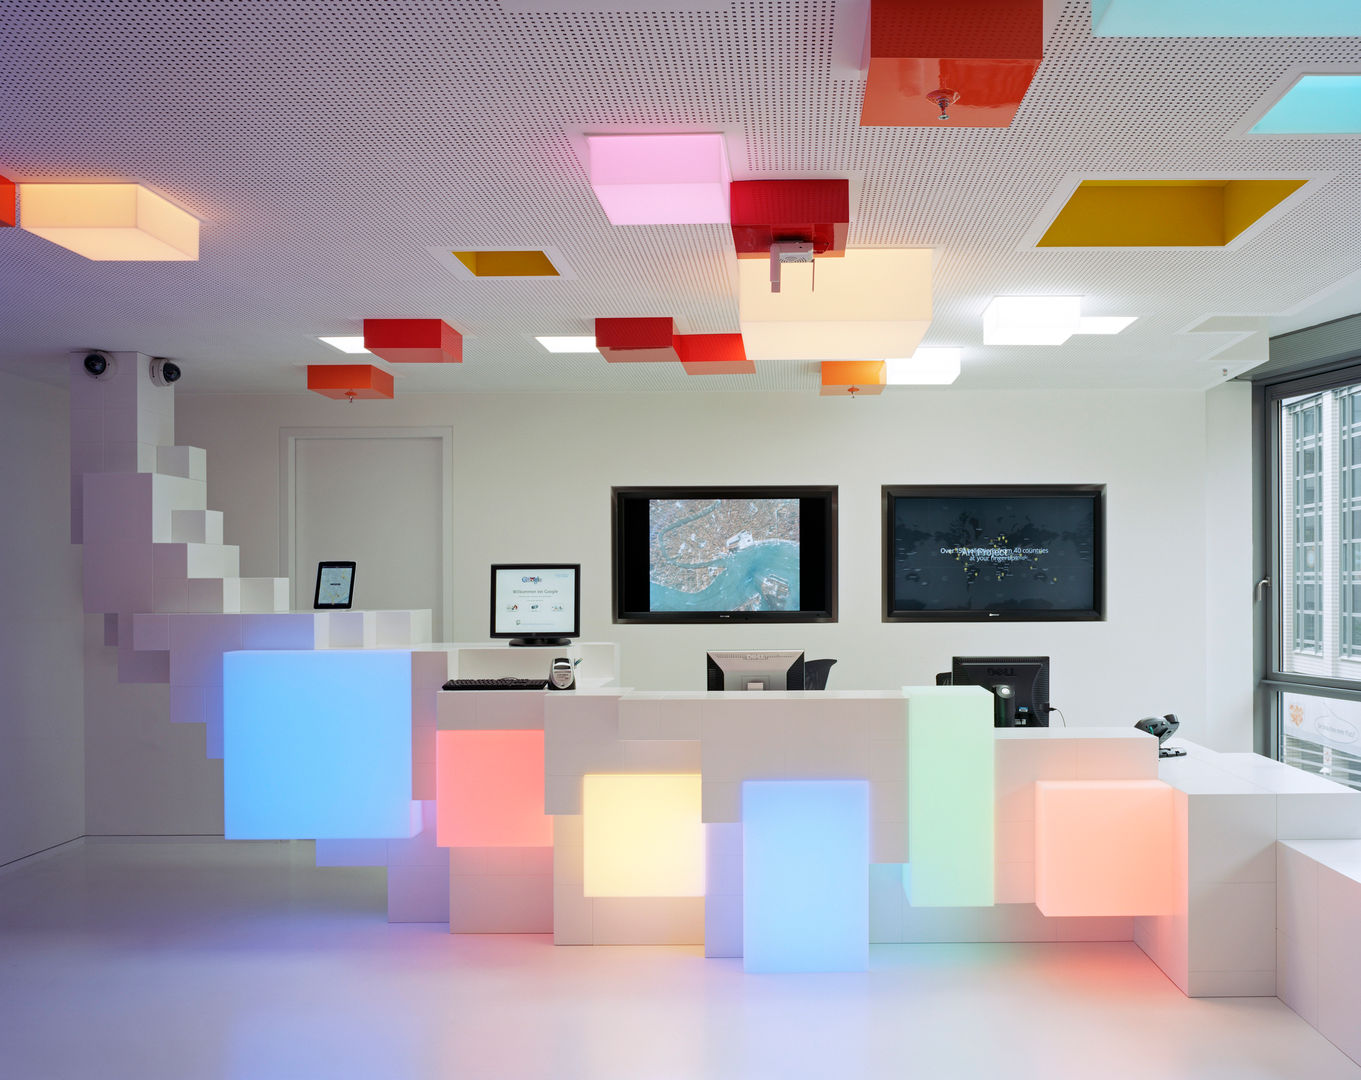 Google Foyer, team licht team licht 商業空間 オフィスビル